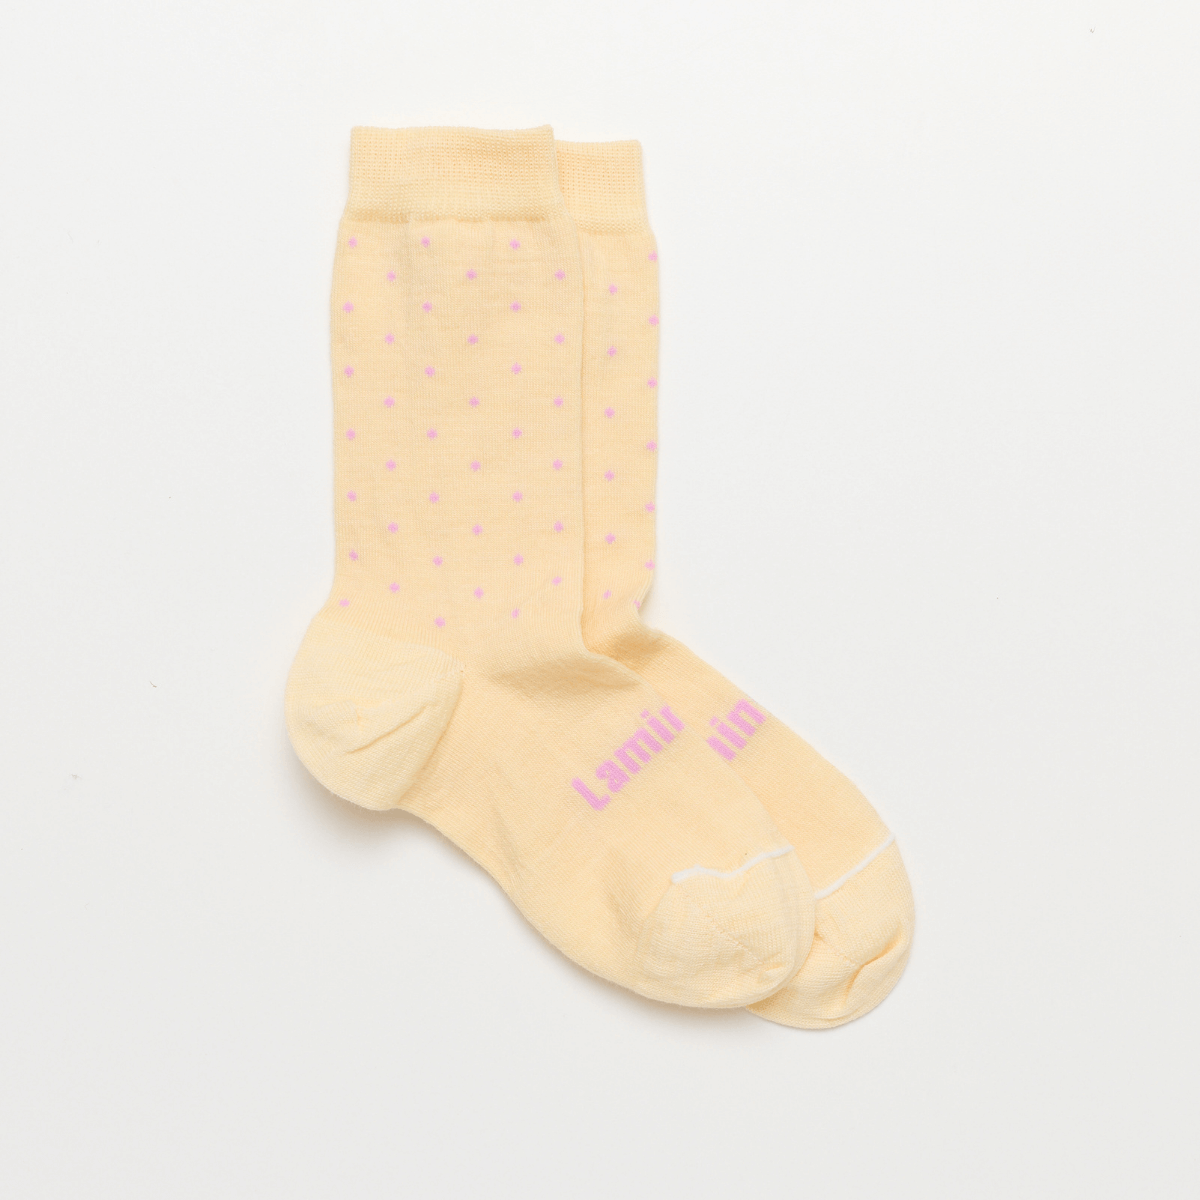 merino wool child socks cream and purple